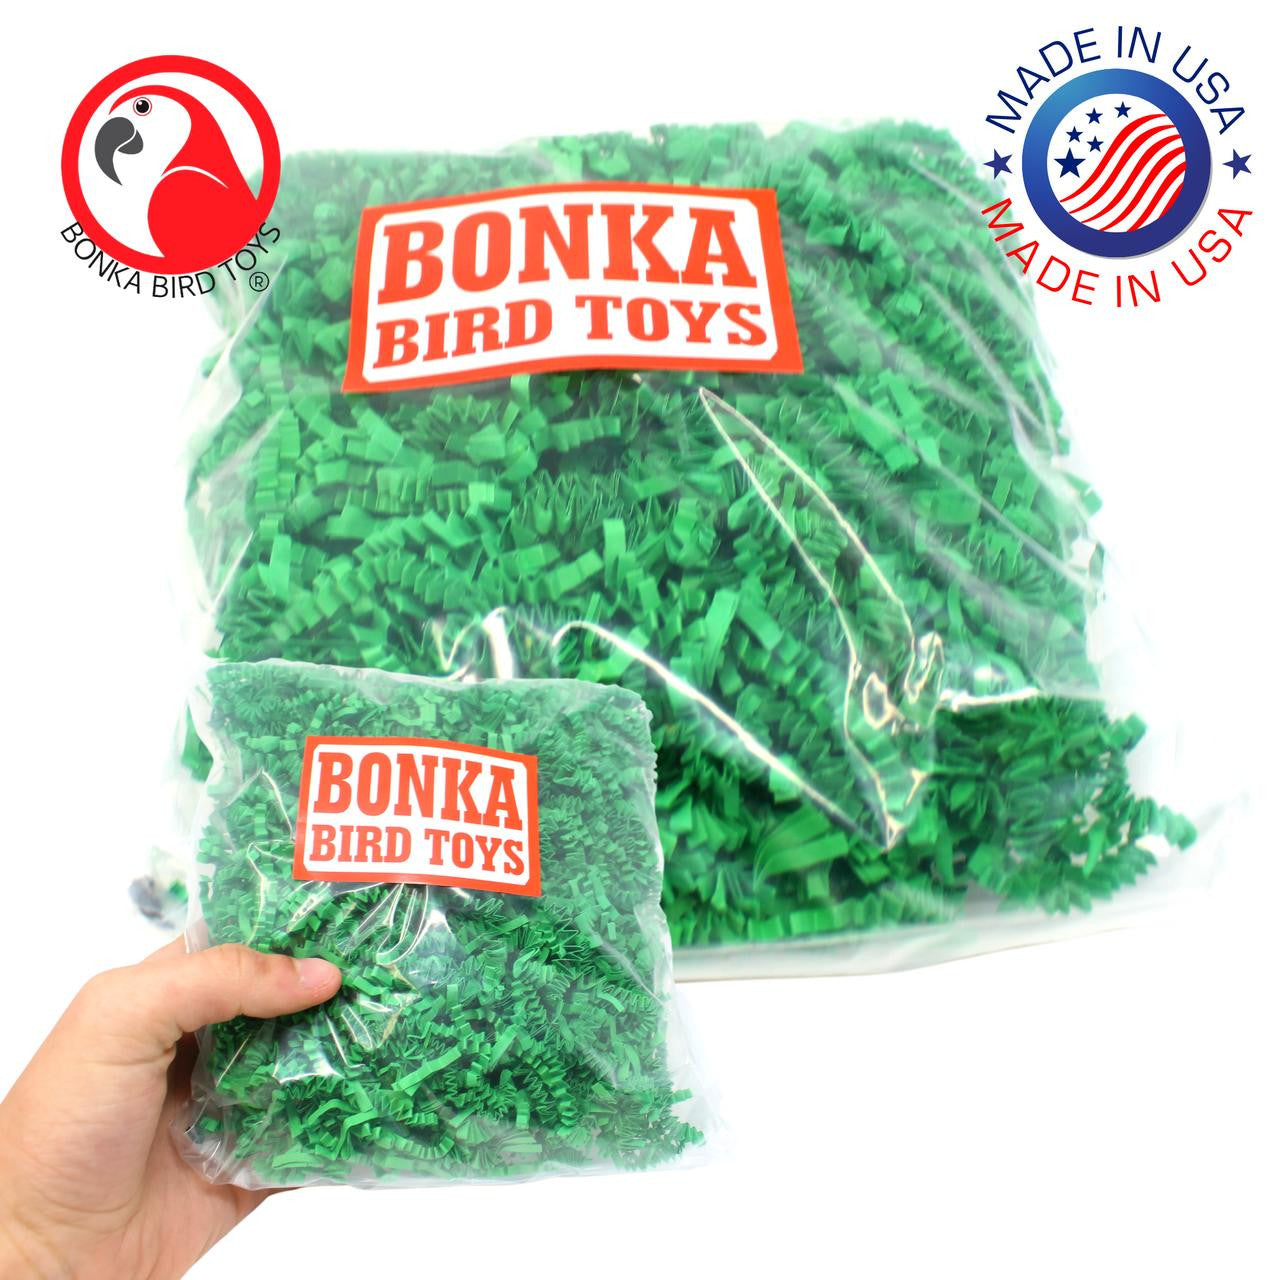 1654 Crinkle Shred Paper from bonka bird toys – Bonka Bird Toys